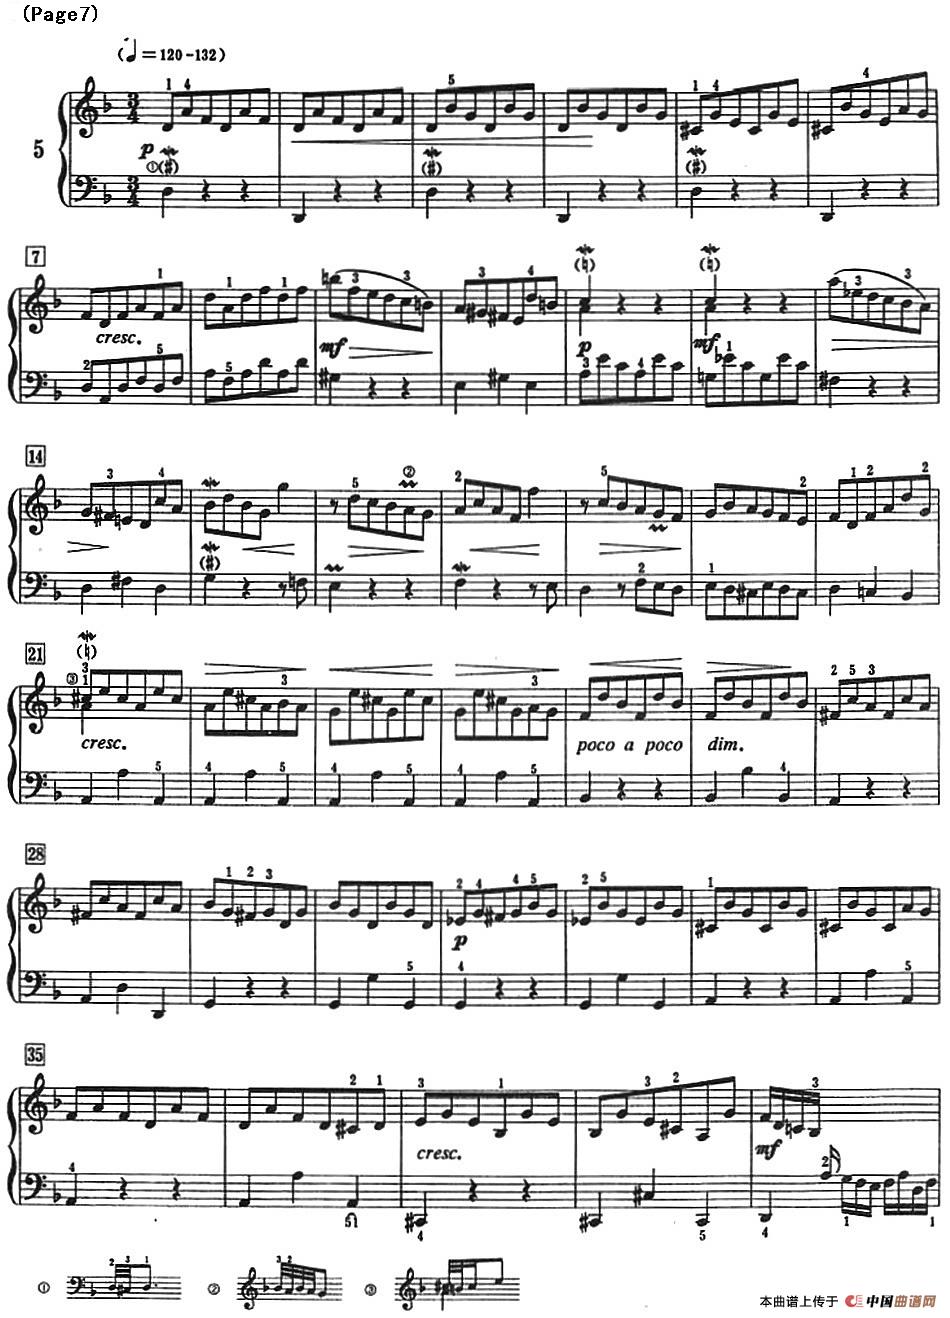 巴赫小前奏曲（NO.5-NO.8）(1)_Bach Little Prelude and Fugue_页面_12.jpg